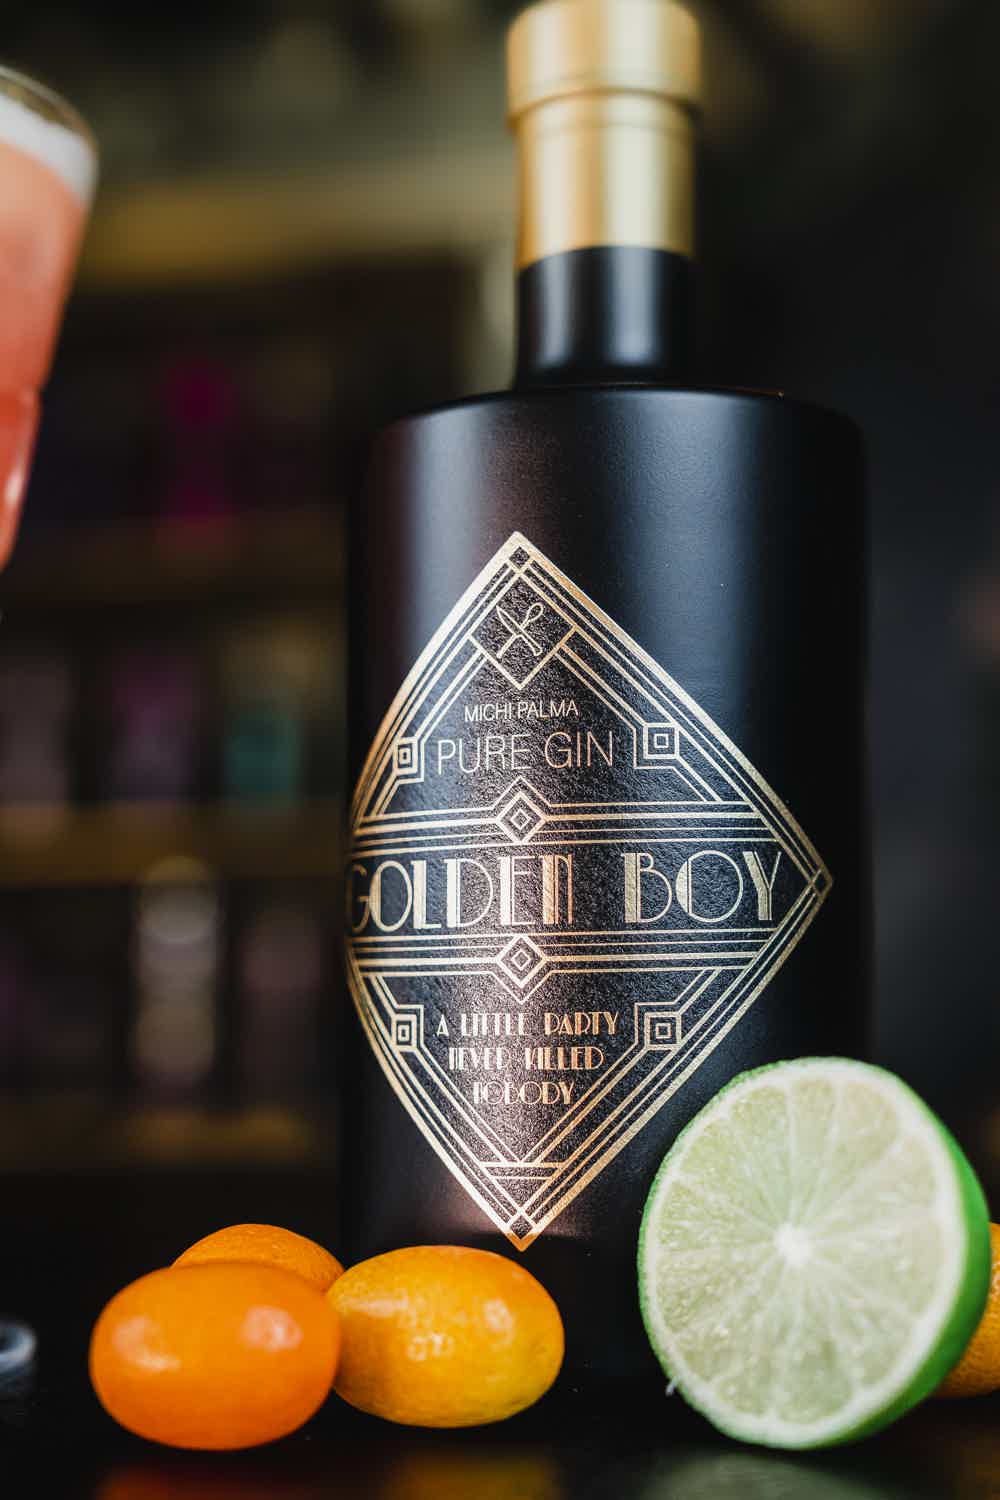 Golden Boy Pure Gin 41.0% 0.5L, Spirits